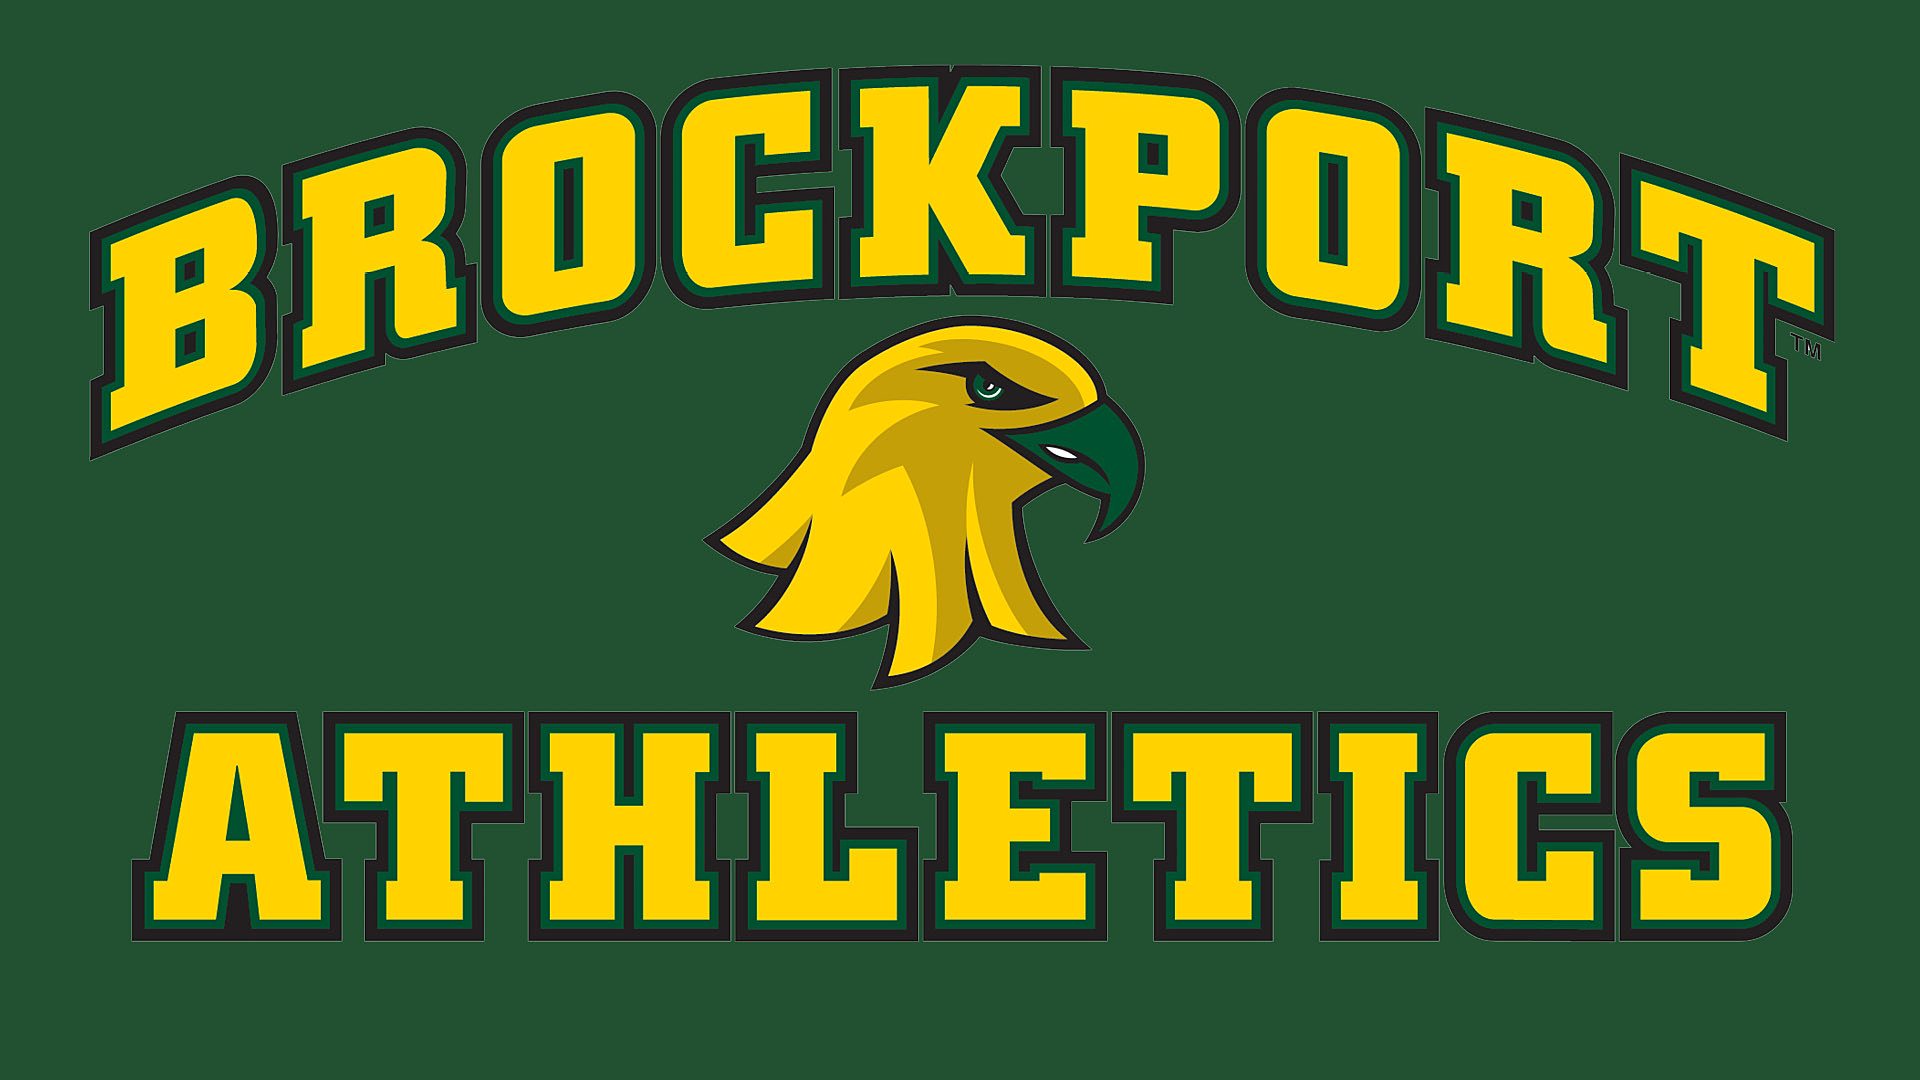 Brockport Athletics logo with golden eagle